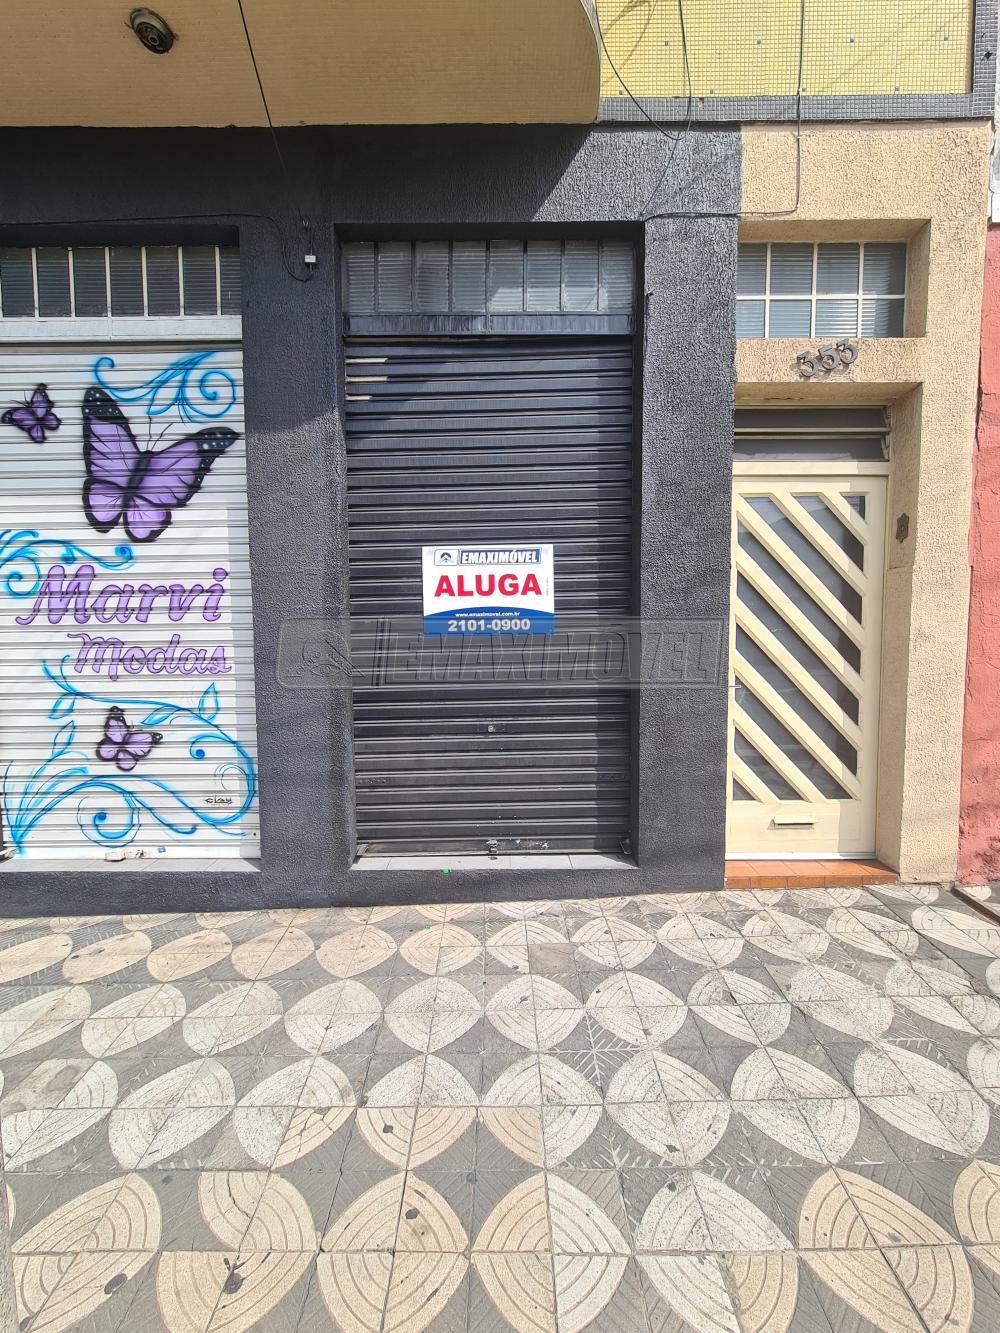 Alugar Salão Comercial / Negócios em Sorocaba R$ 1.200,00 - Foto 1